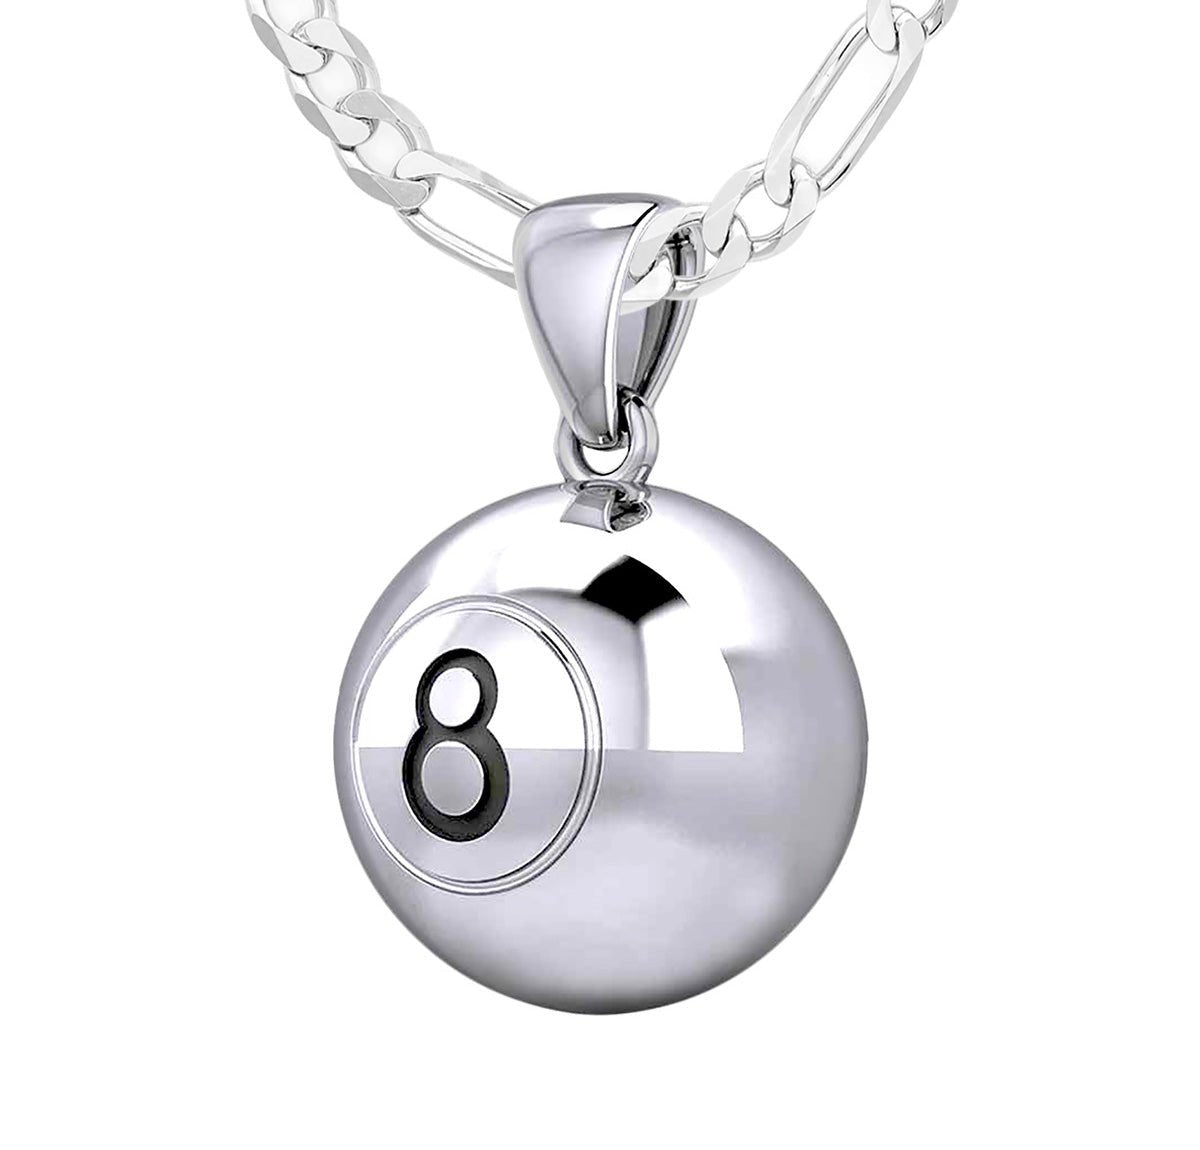 【大人気格安】8uede Eight Necklace S / Silver アクセサリー